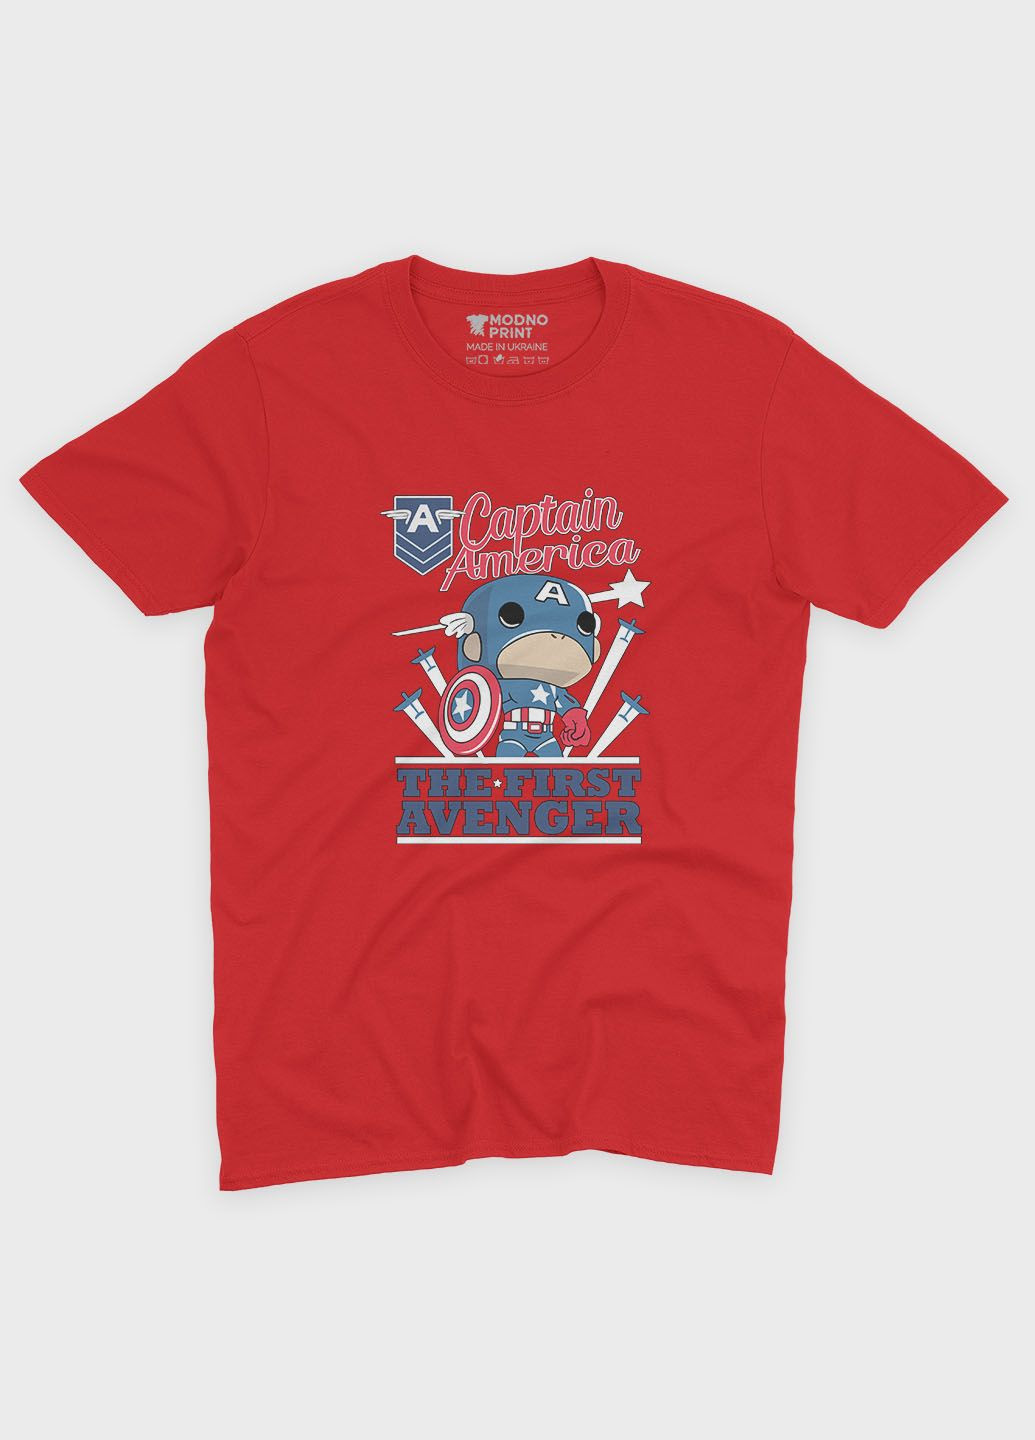 Червона демісезонна футболка для хлопчика з принтом супергероя - капітан америка (ts001-1-sre-006-022-004-b) Modno